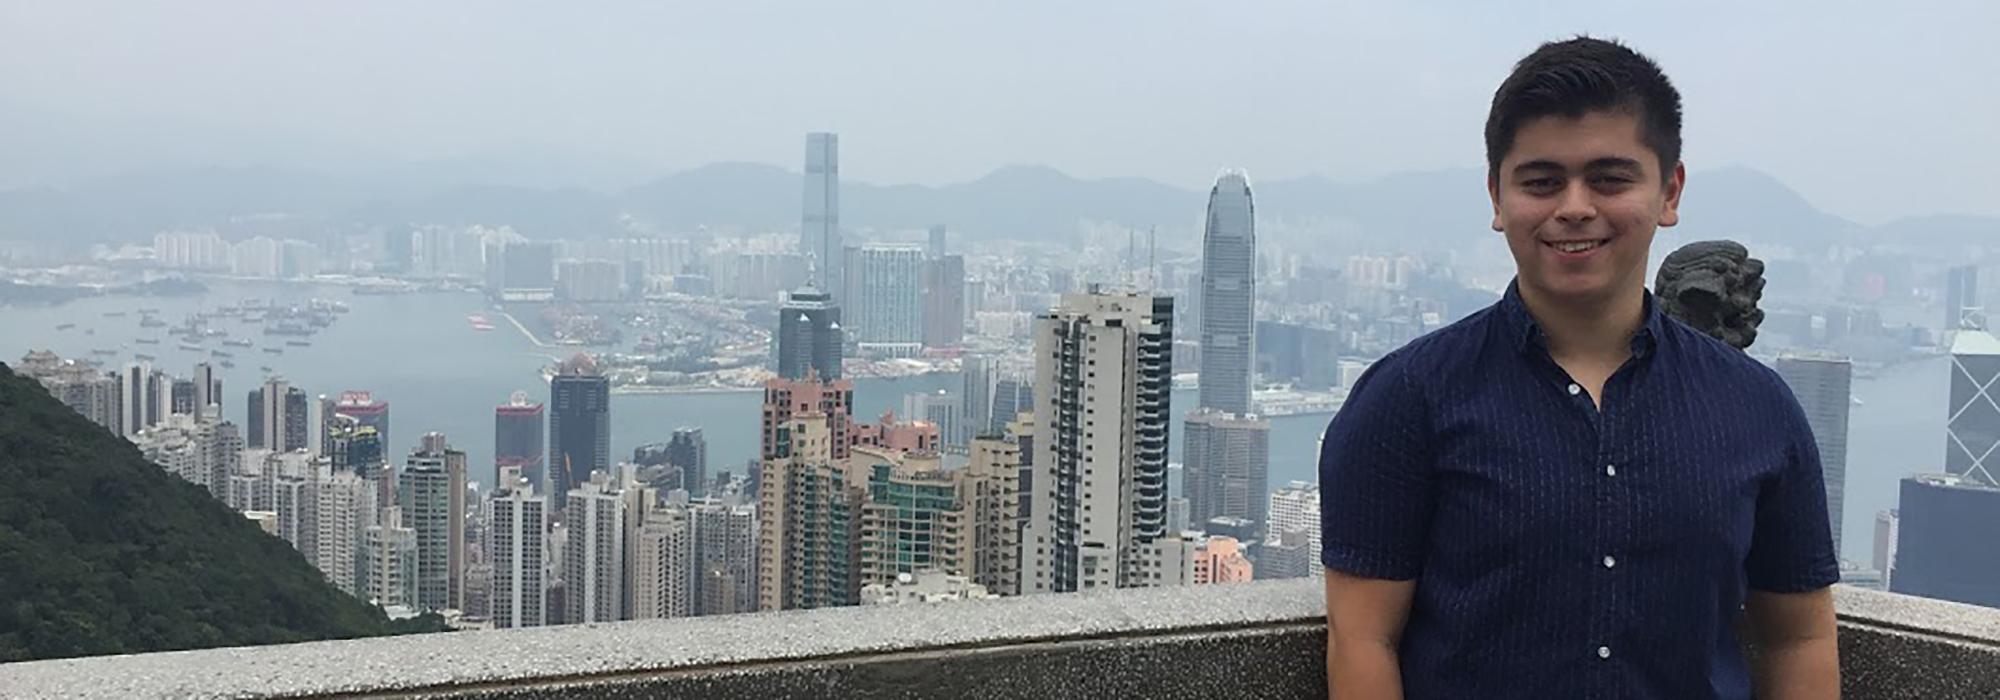 Adrian Burbie in Hong Kong - Photo: © Adrian Burbie